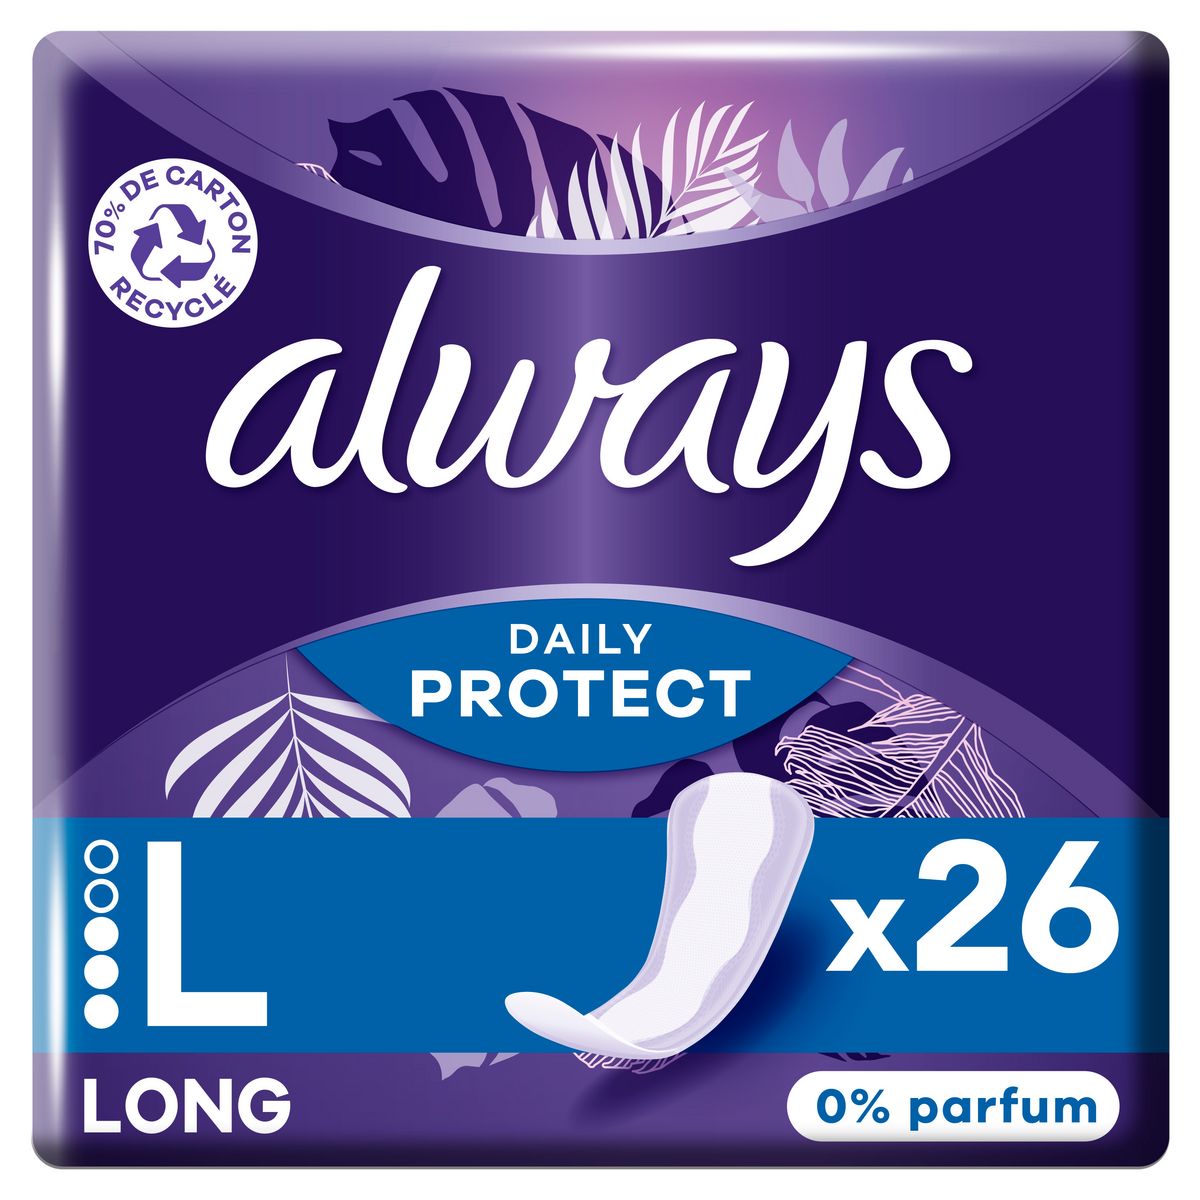 ALWAYS Daily Protect Serviettes hygiéniques L Long 26 serviettes